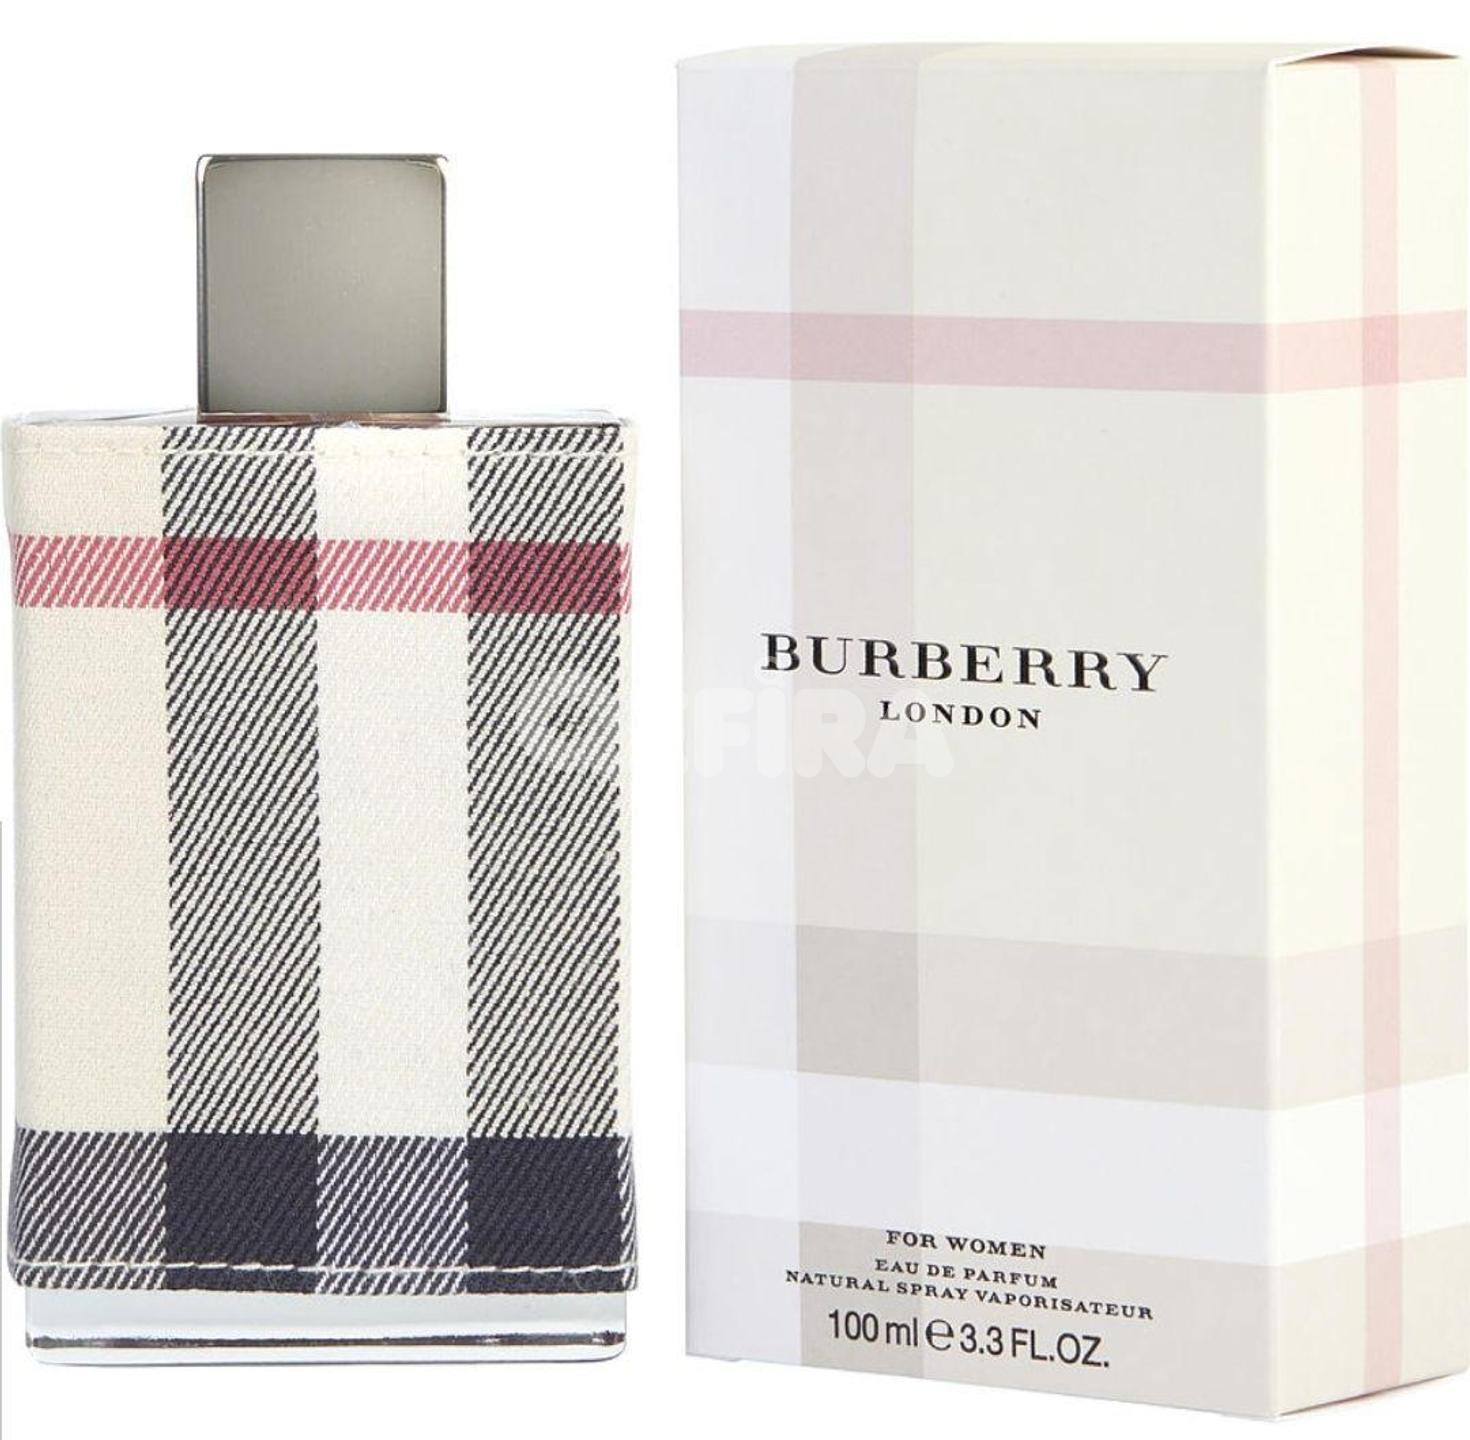 Burberry London Women's Fragrance in 